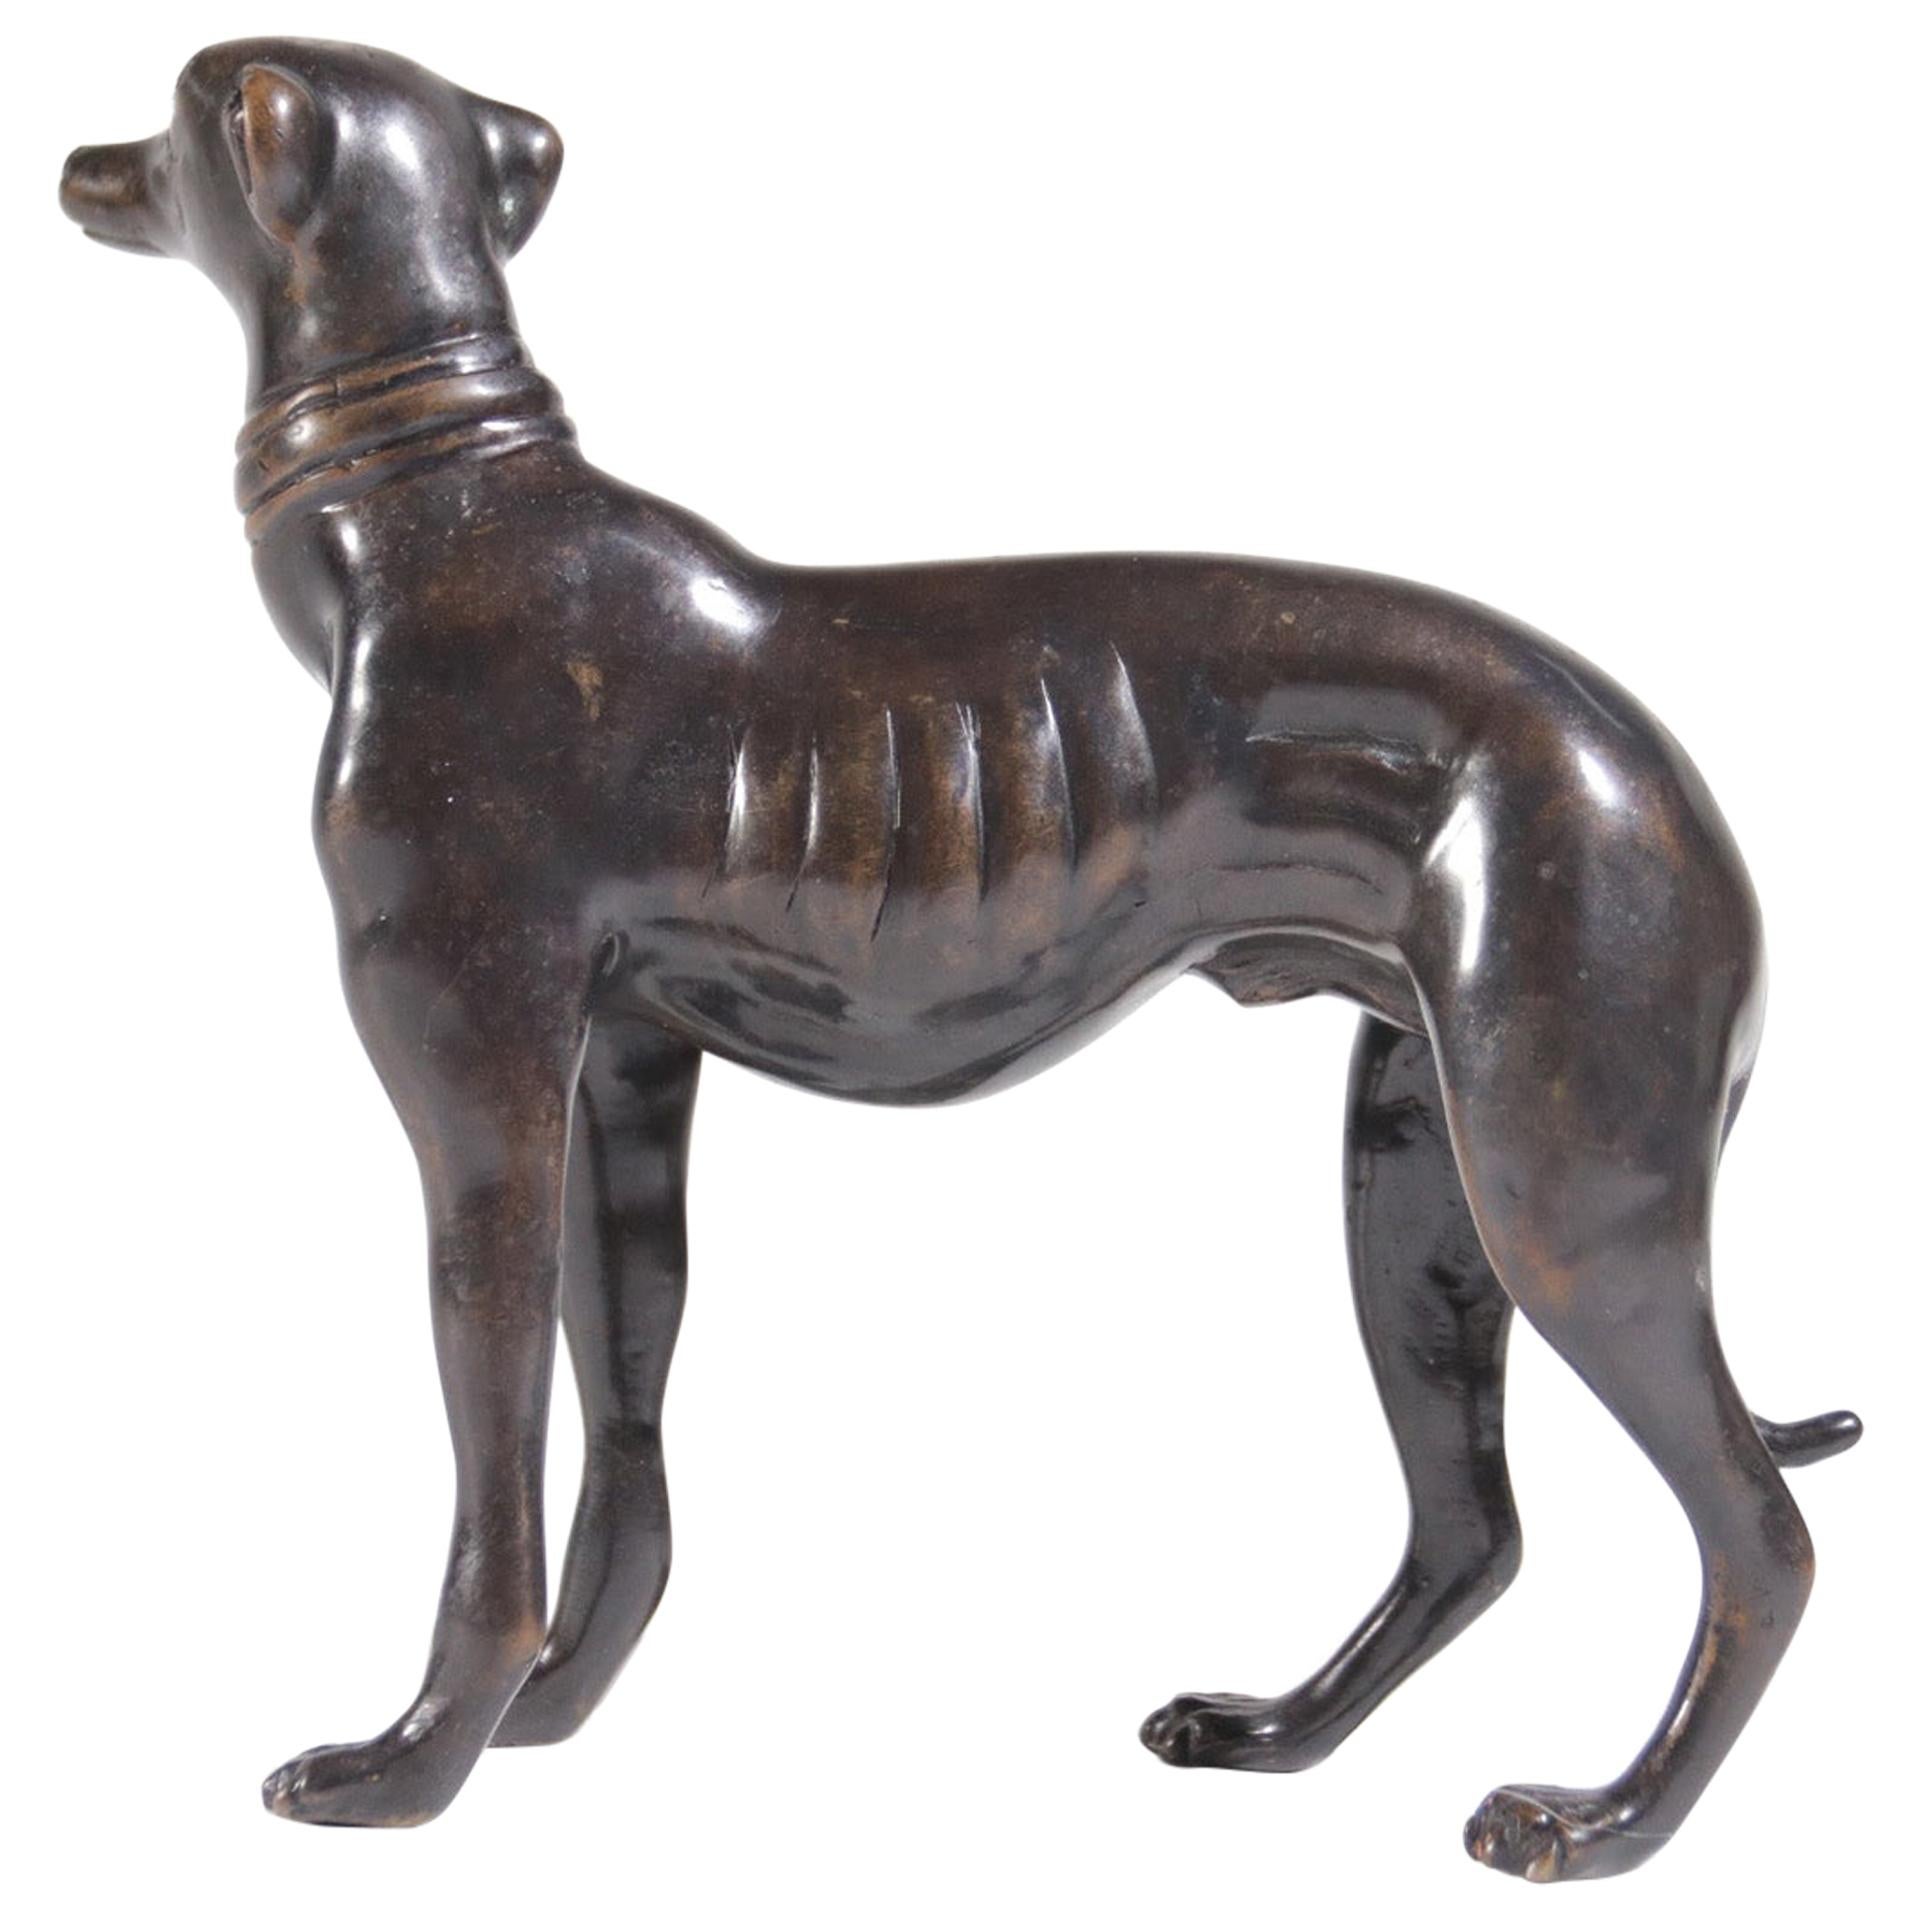 Midcentury Bronze Whippet or Greyhound Dog Sculpture